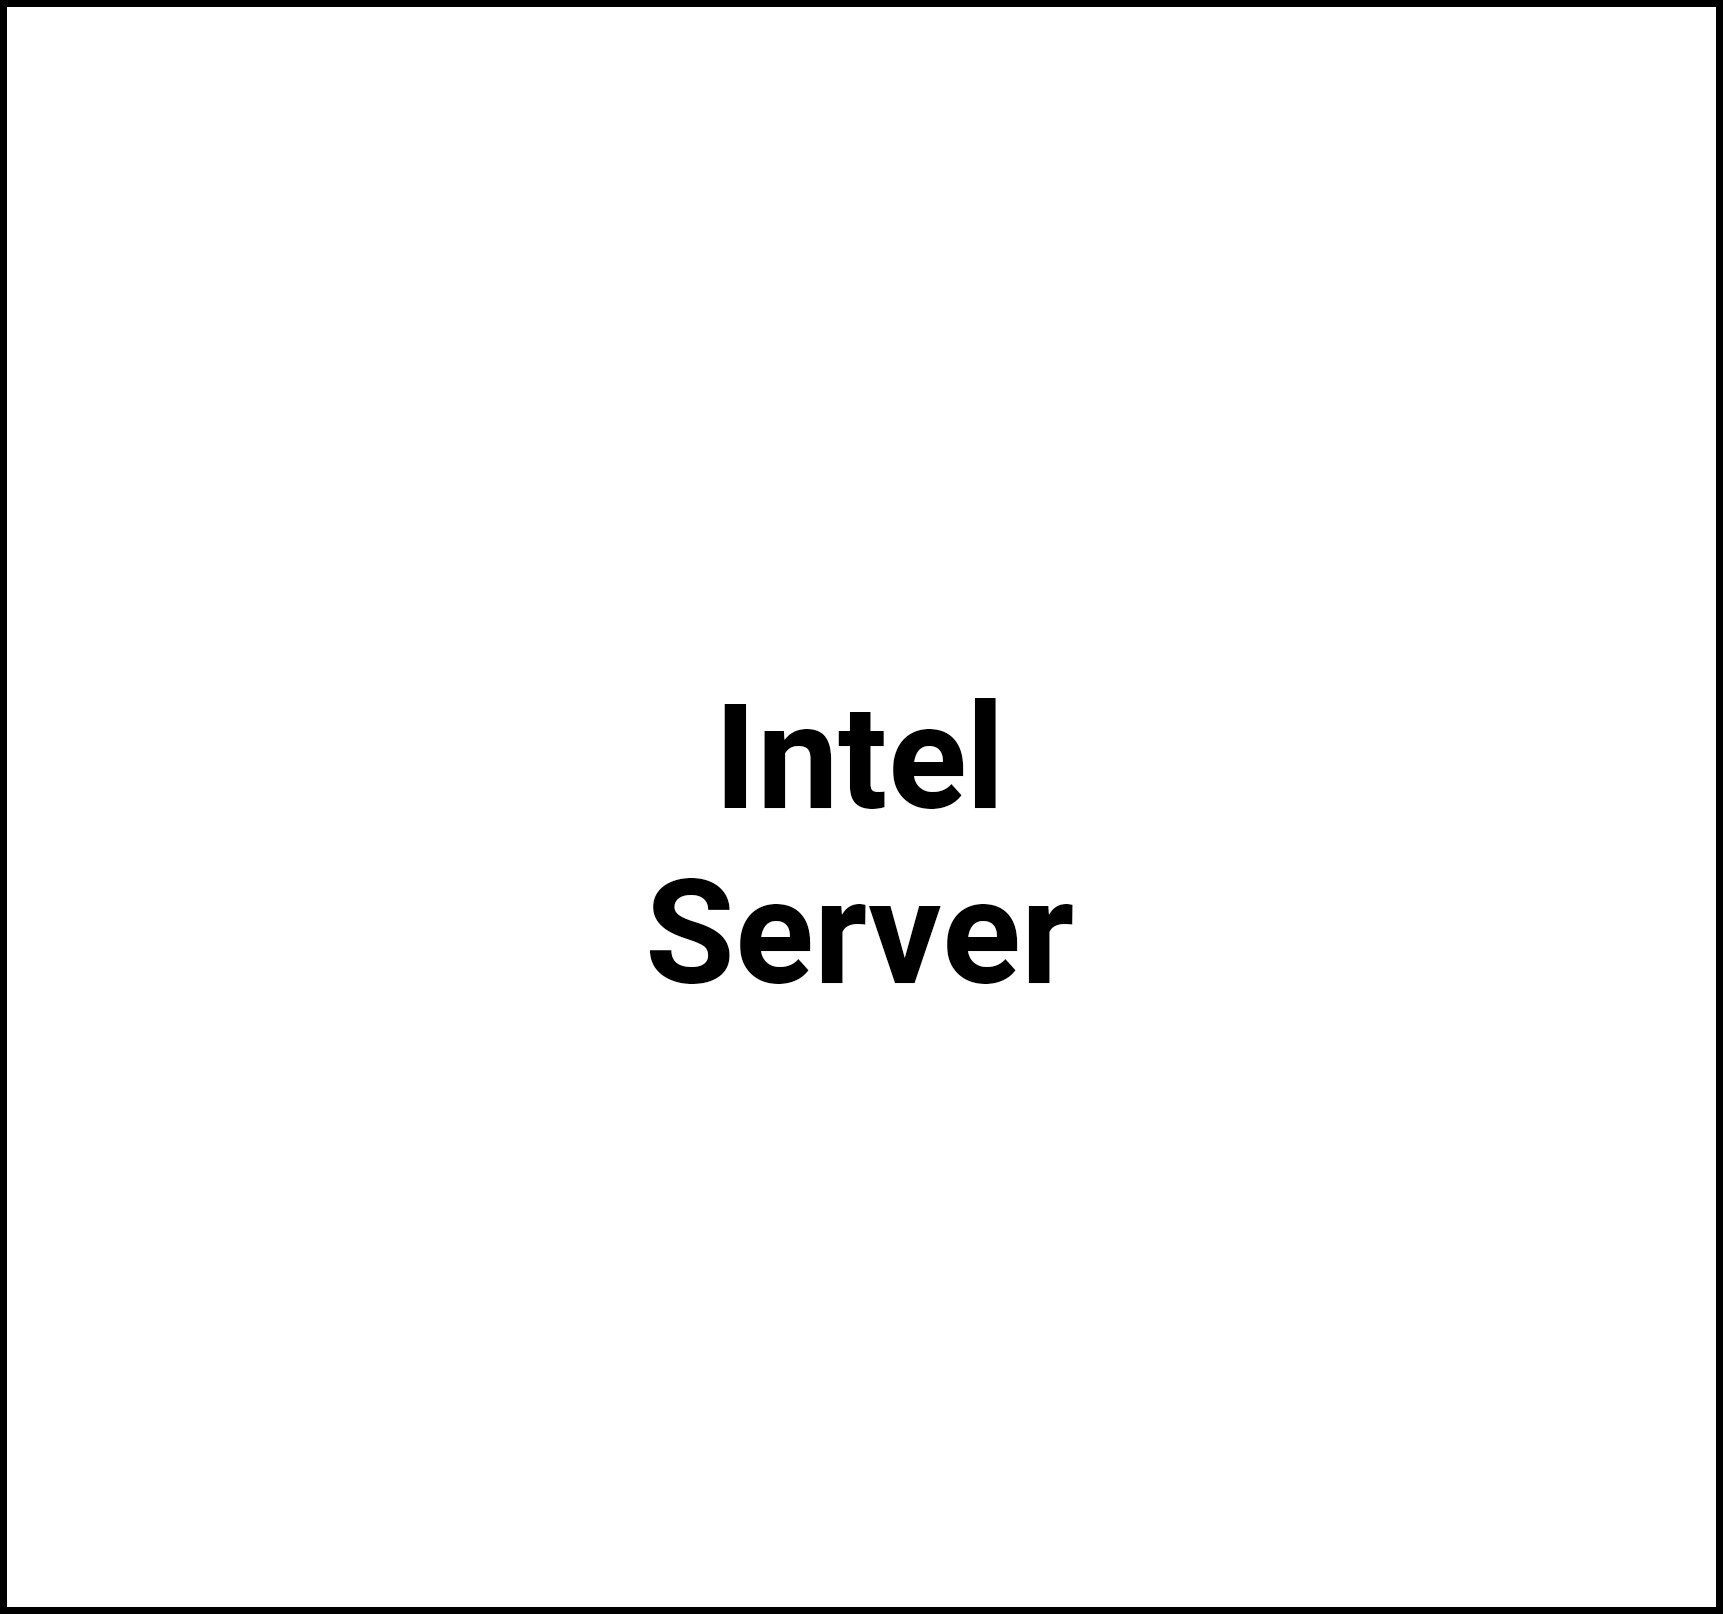 IntelServer.jpg